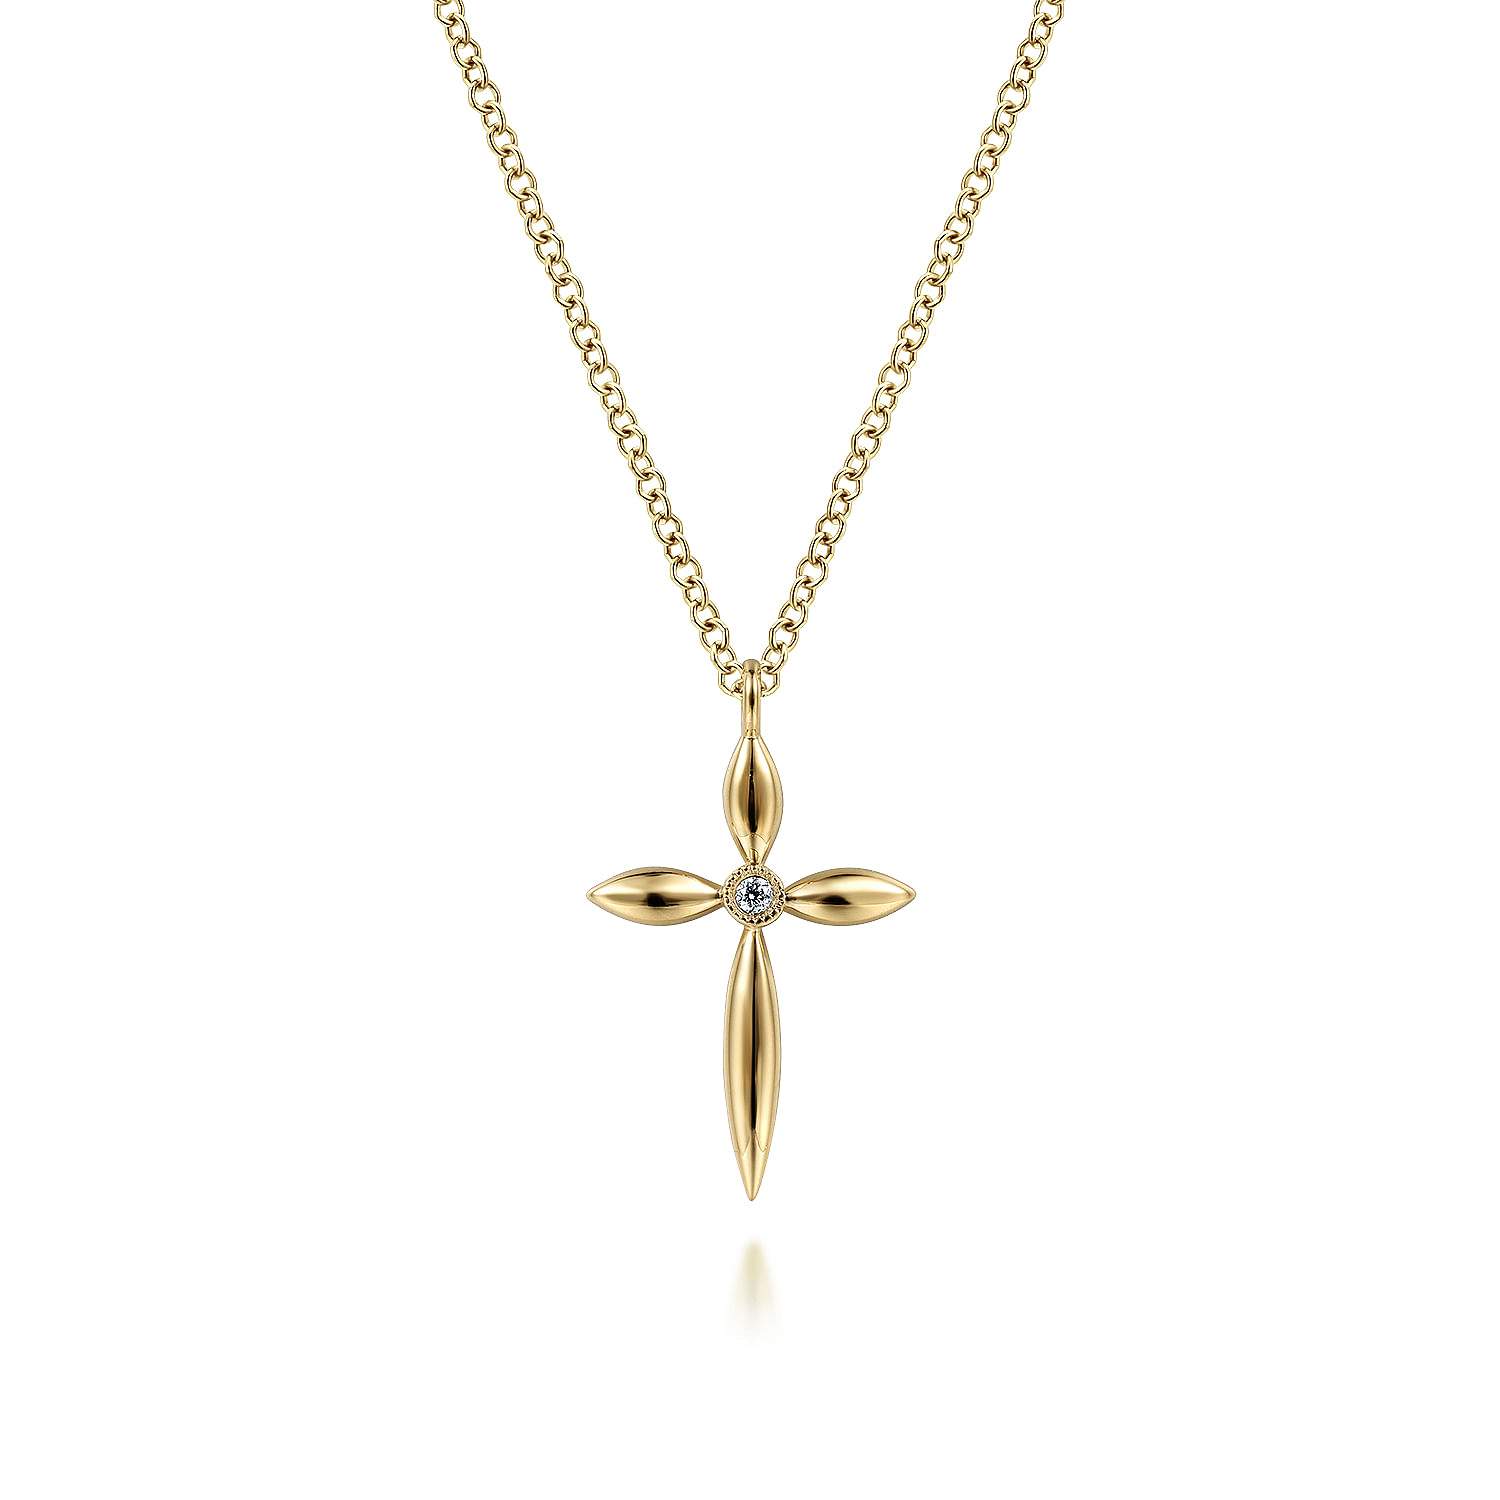 Buy Cross Necklaces | Unique Cross Necklaces Online | Gabriel & Co.